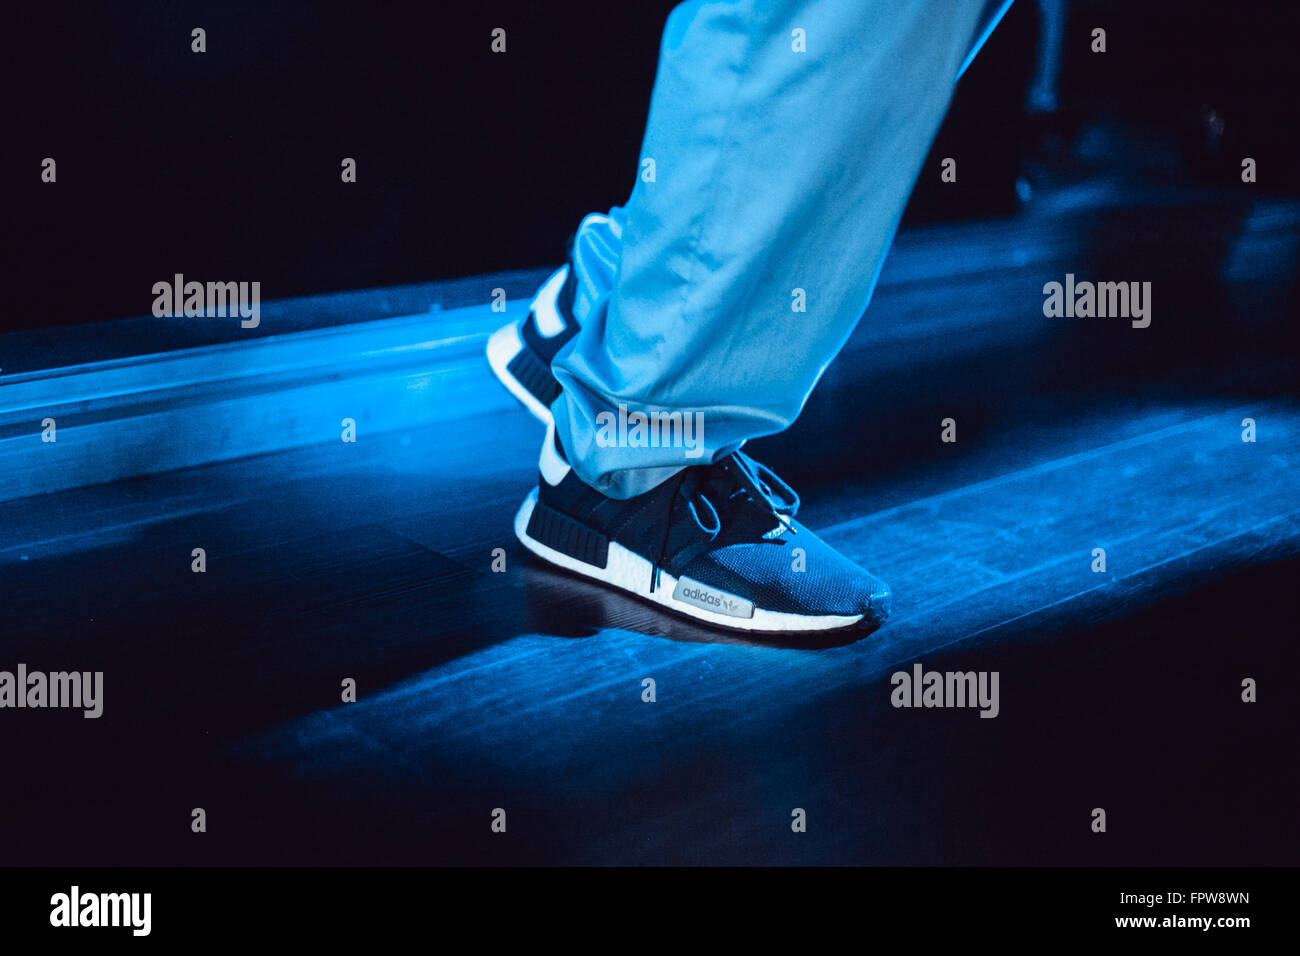 Adidas nmd immagini e fotografie stock ad alta risoluzione - Alamy